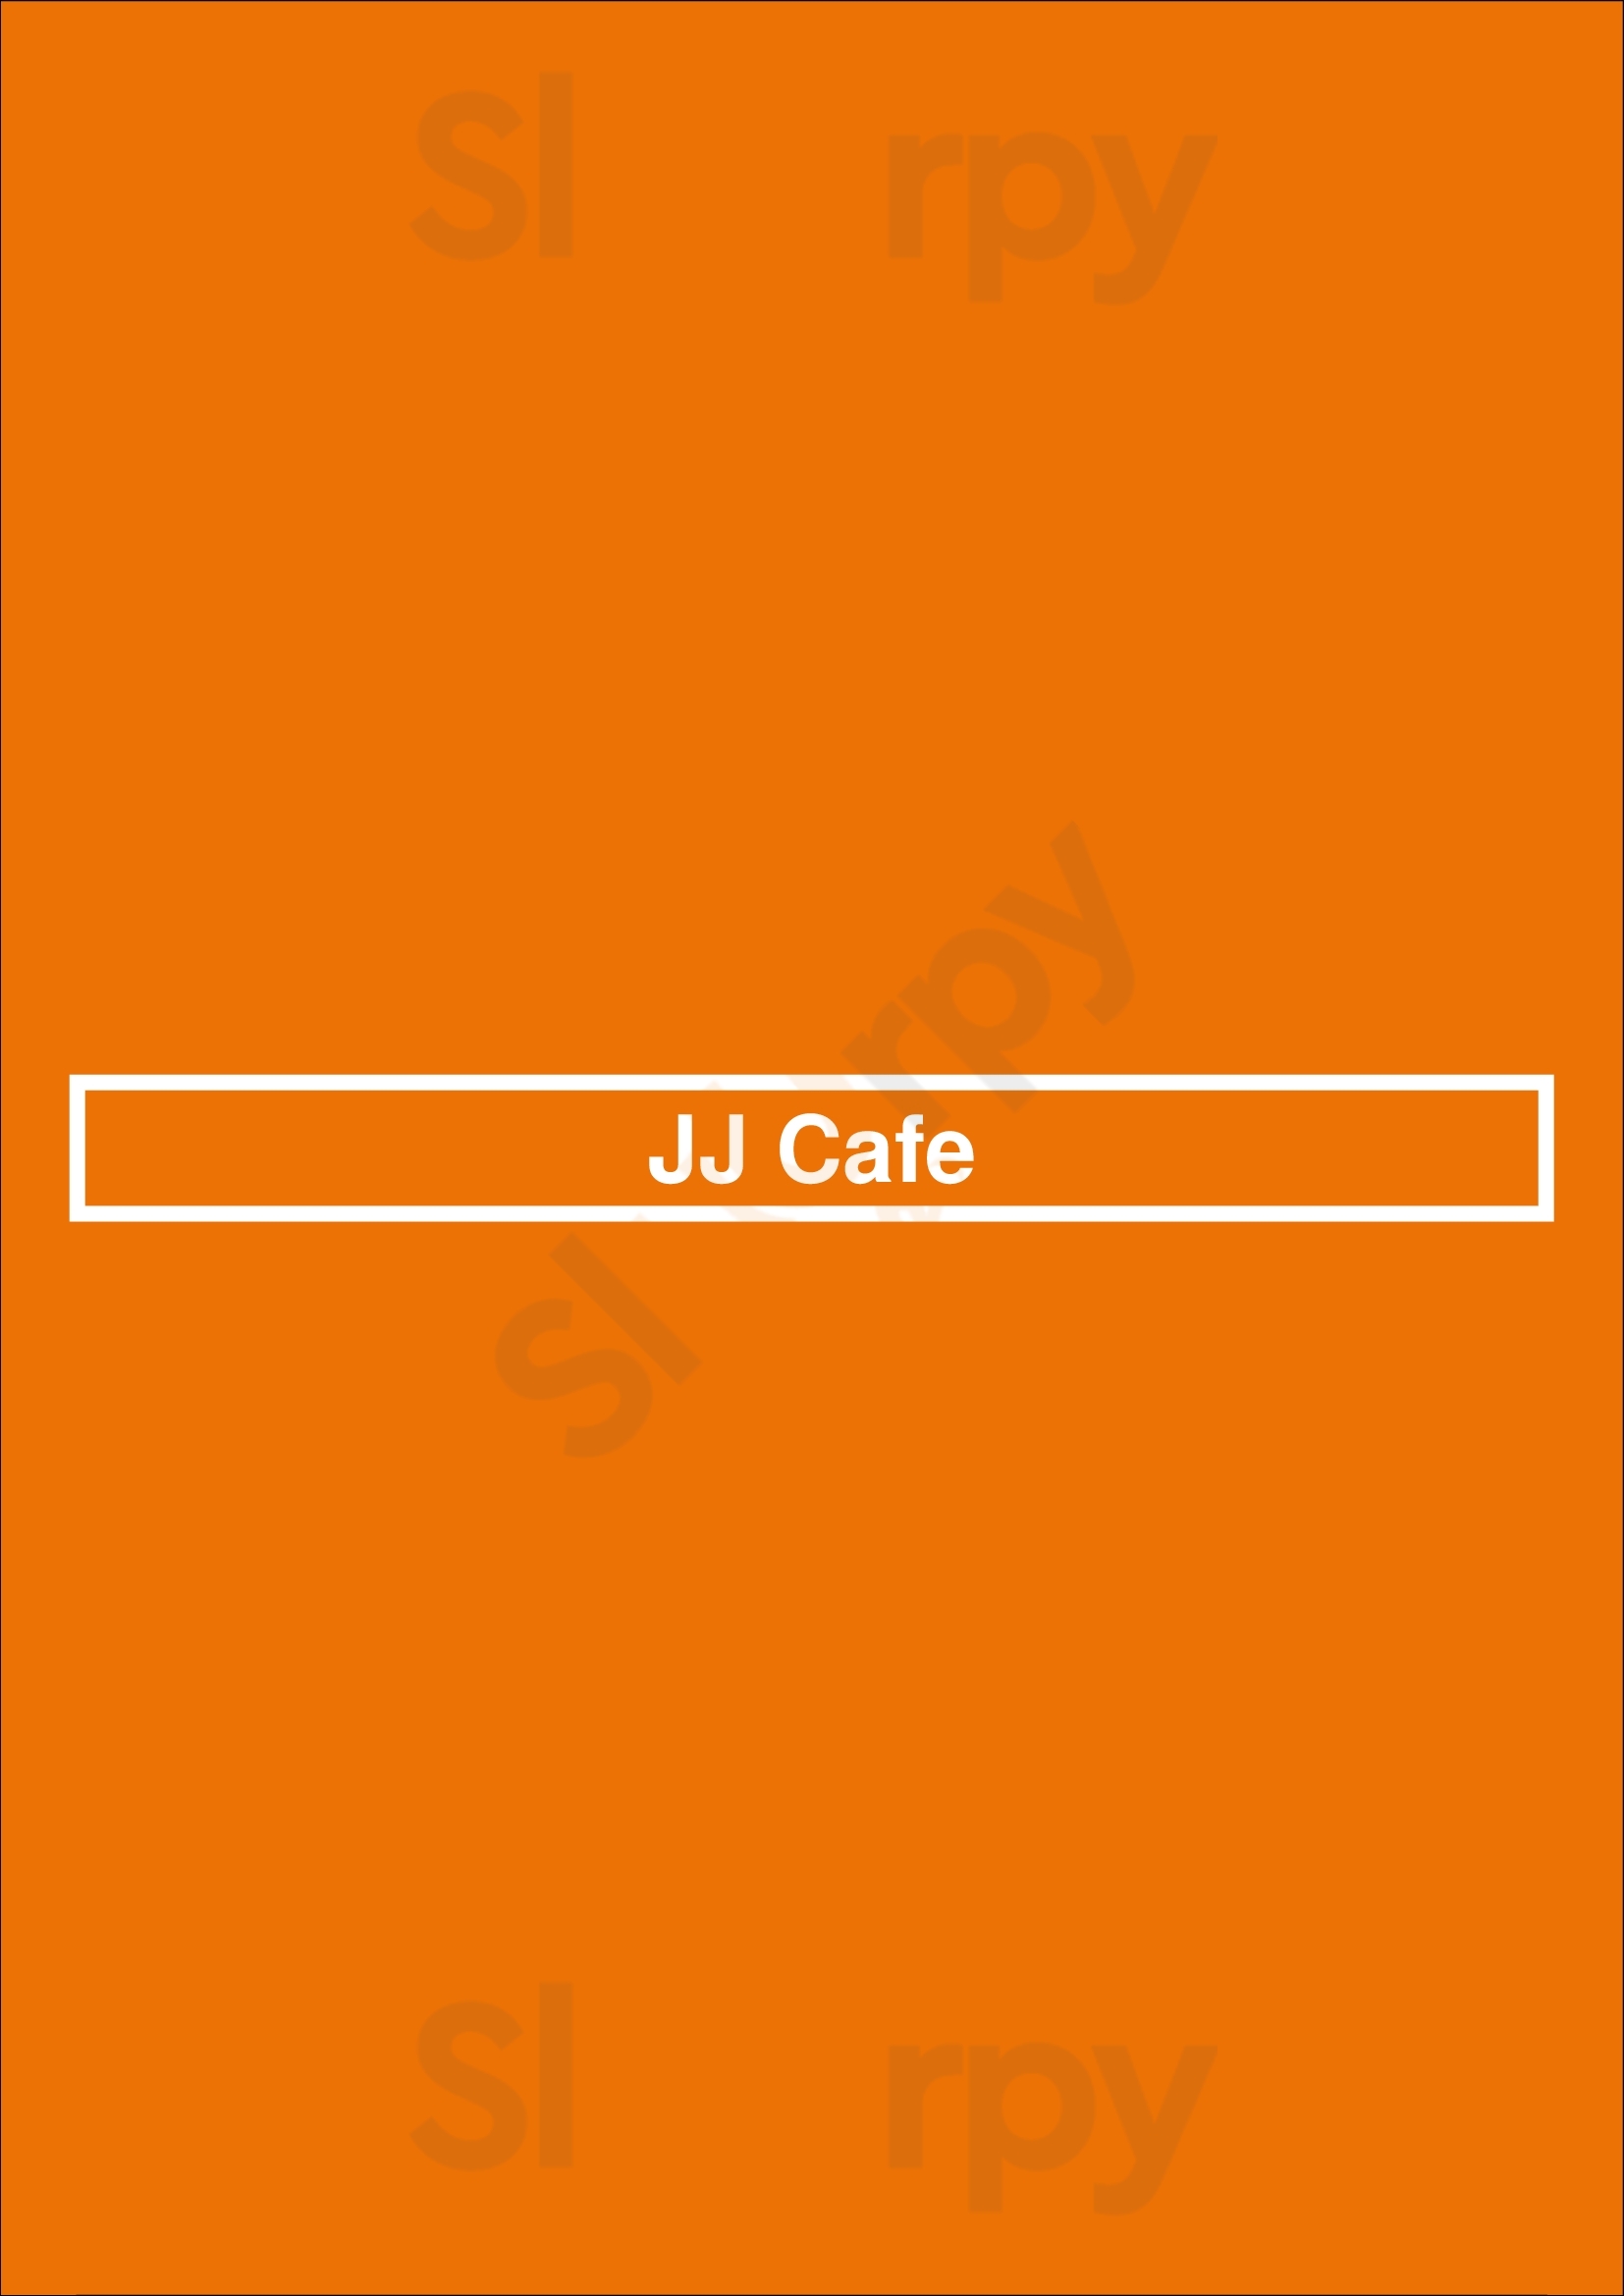 Jj Cafe Fort Lauderdale Menu - 1